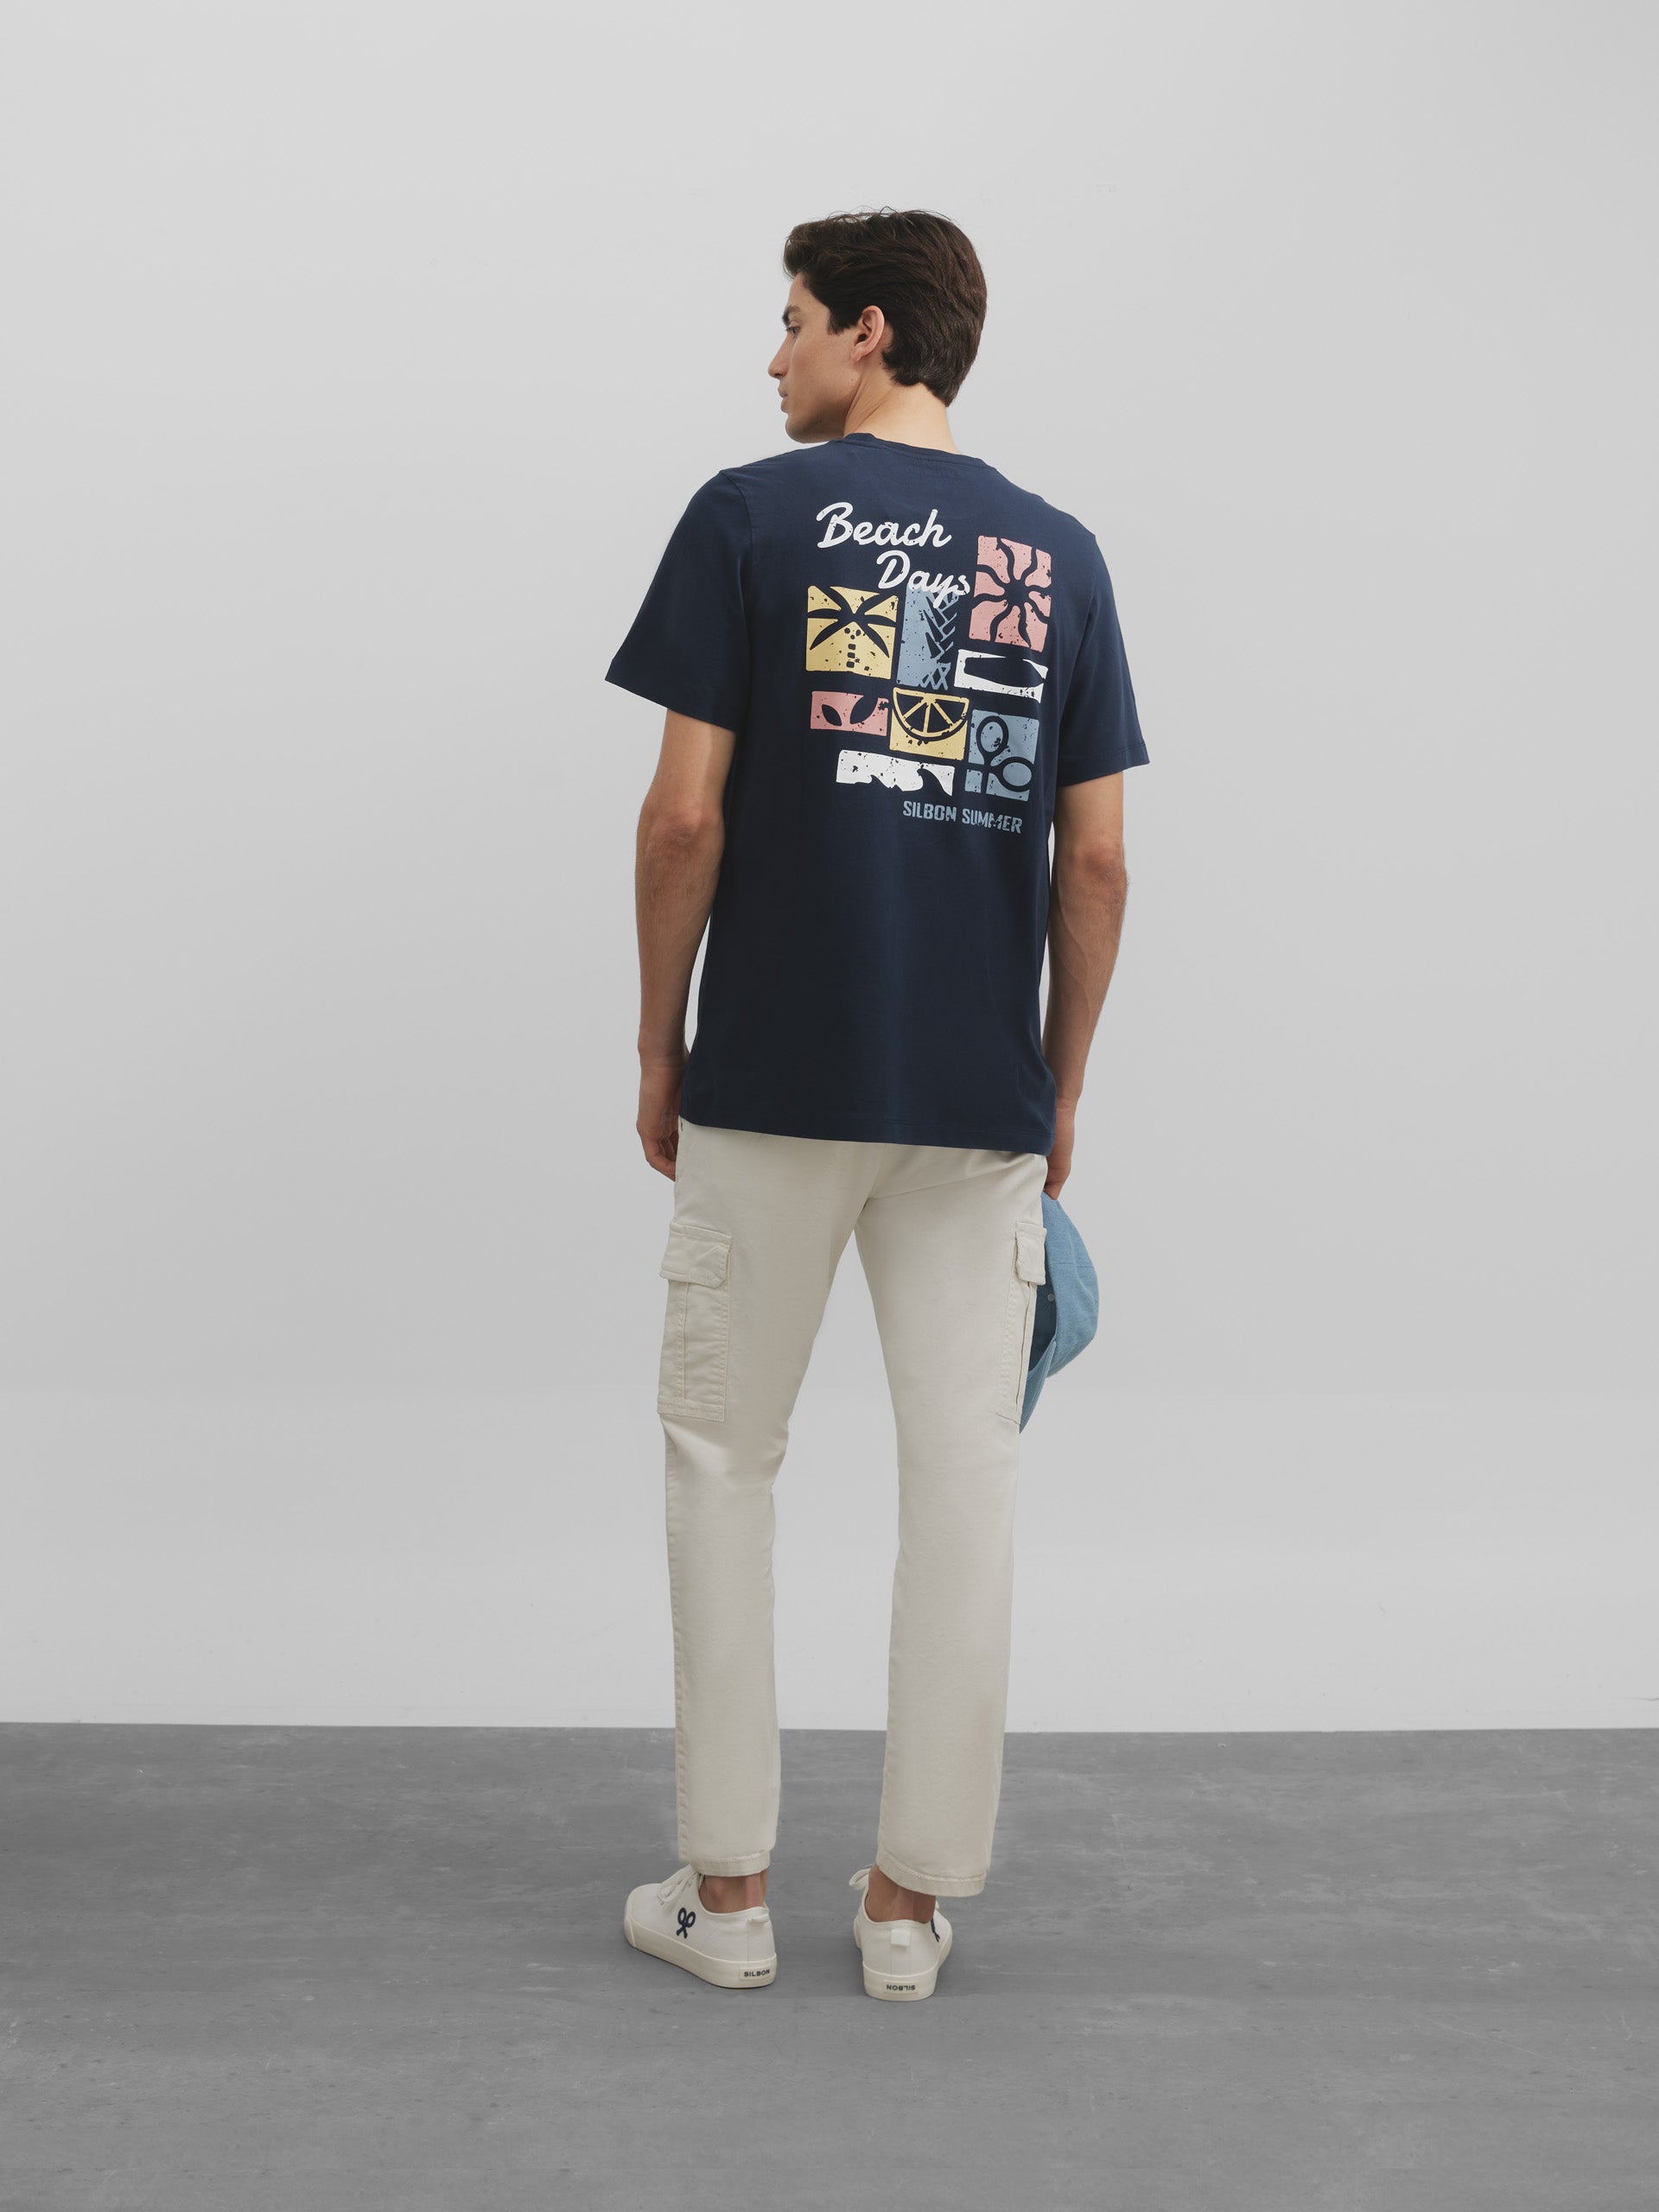 Navy blue beach days t-shirt